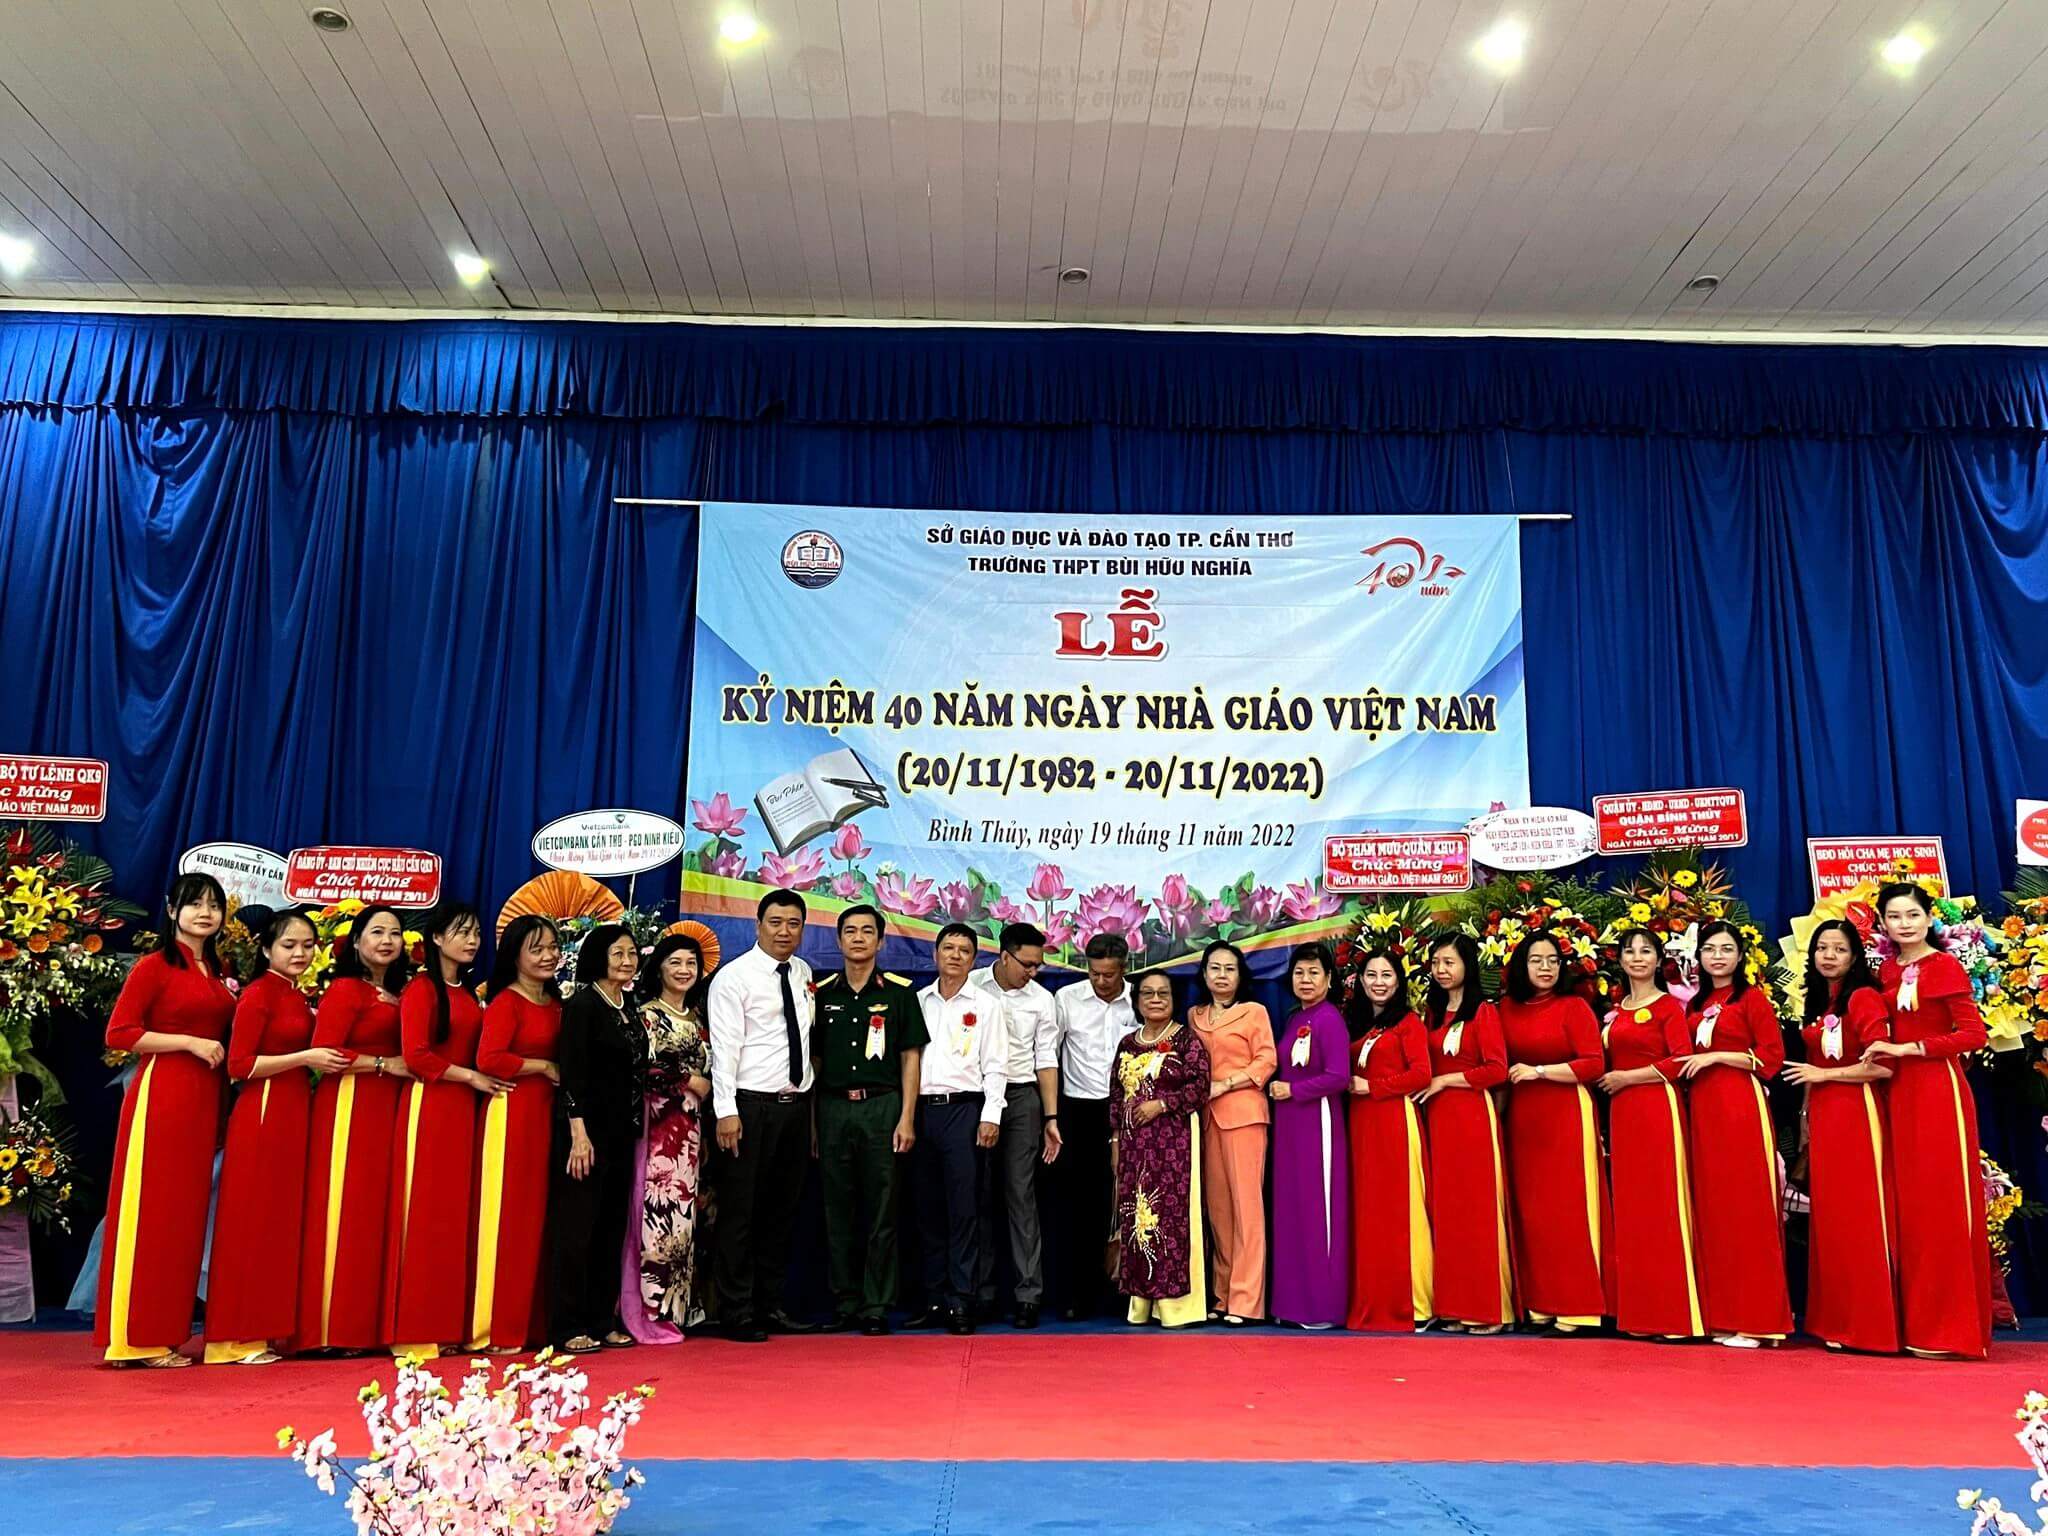 Đội ngũ giáo viên trường THPT Bùi Hữu Nghĩa